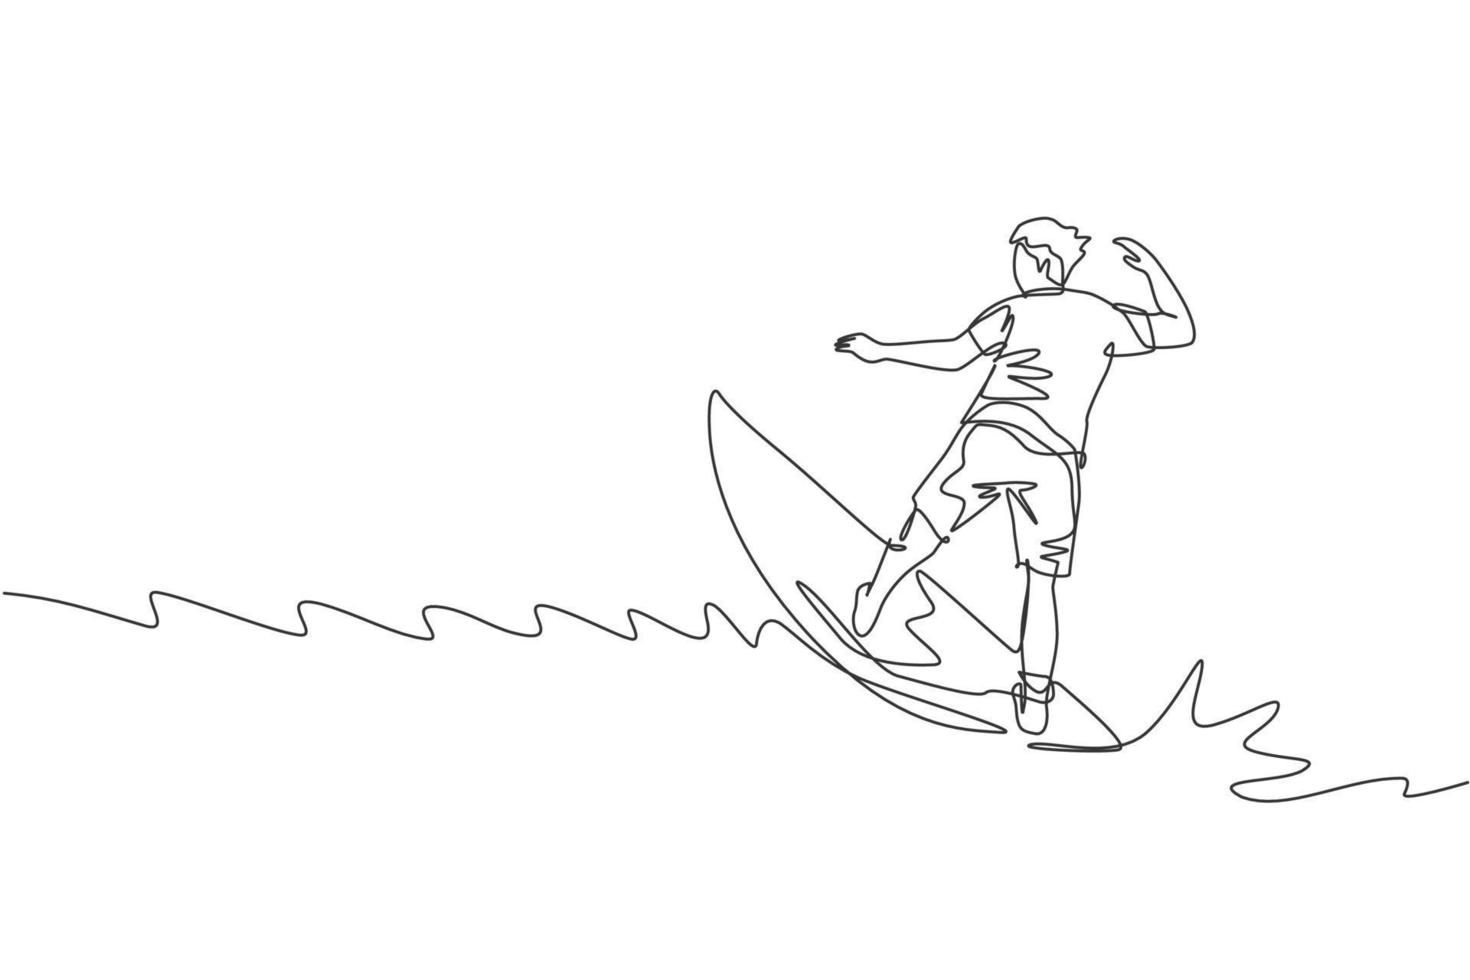 un seul dessin au trait d'un jeune surfeur sportif à cheval sur de grosses vagues dans l'illustration graphique vectorielle de surf beach paradise. concept de mode de vie de sports nautiques extrêmes. conception moderne de dessin en ligne continue vecteur